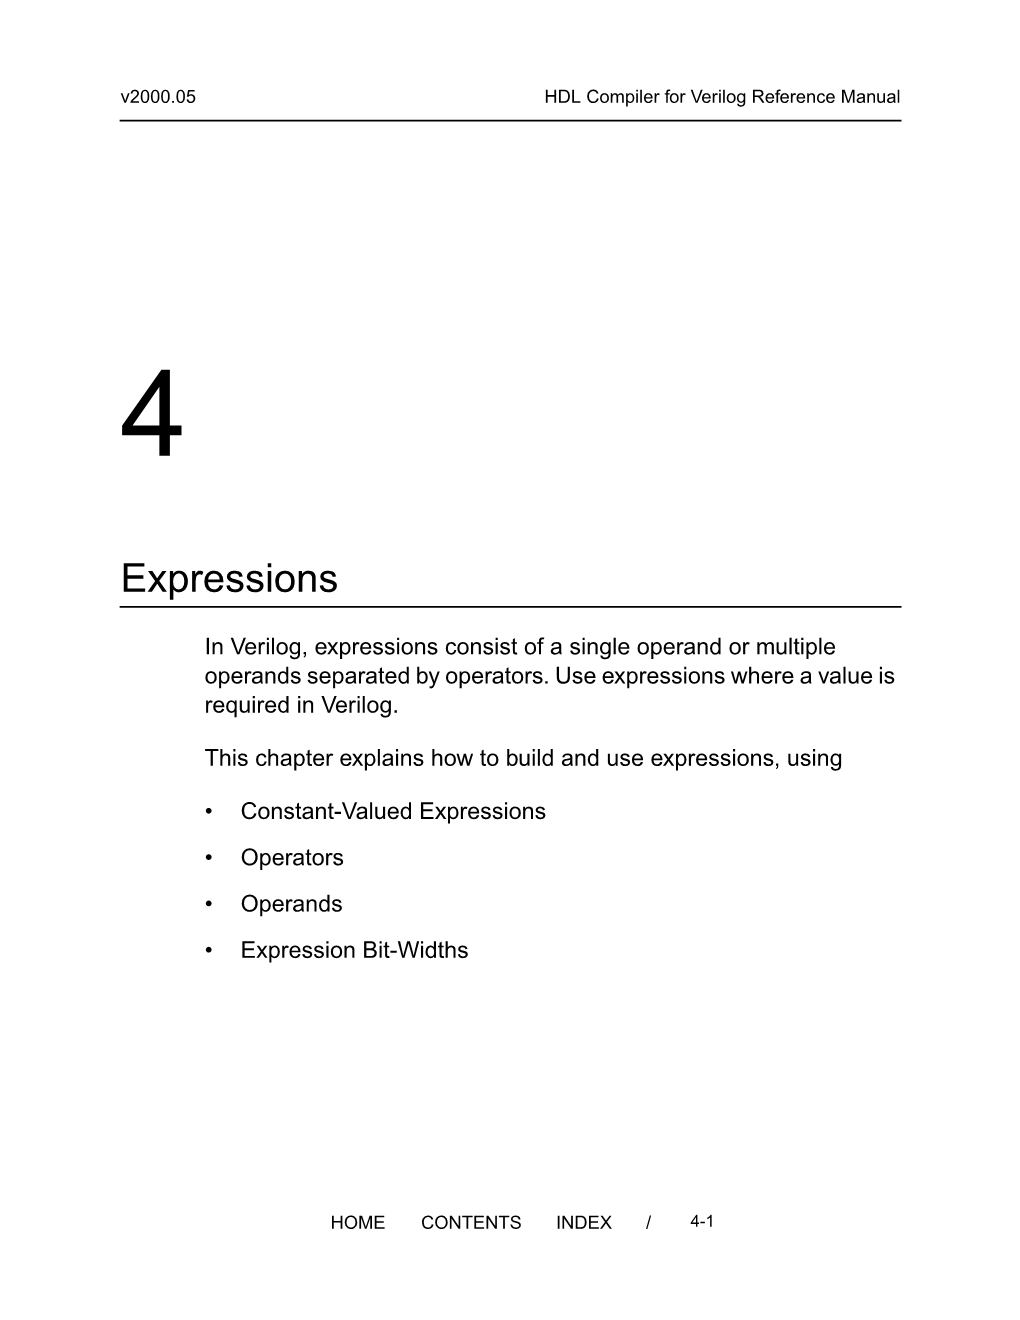 HDL Compiler for Verilog RM: 4. Expressions